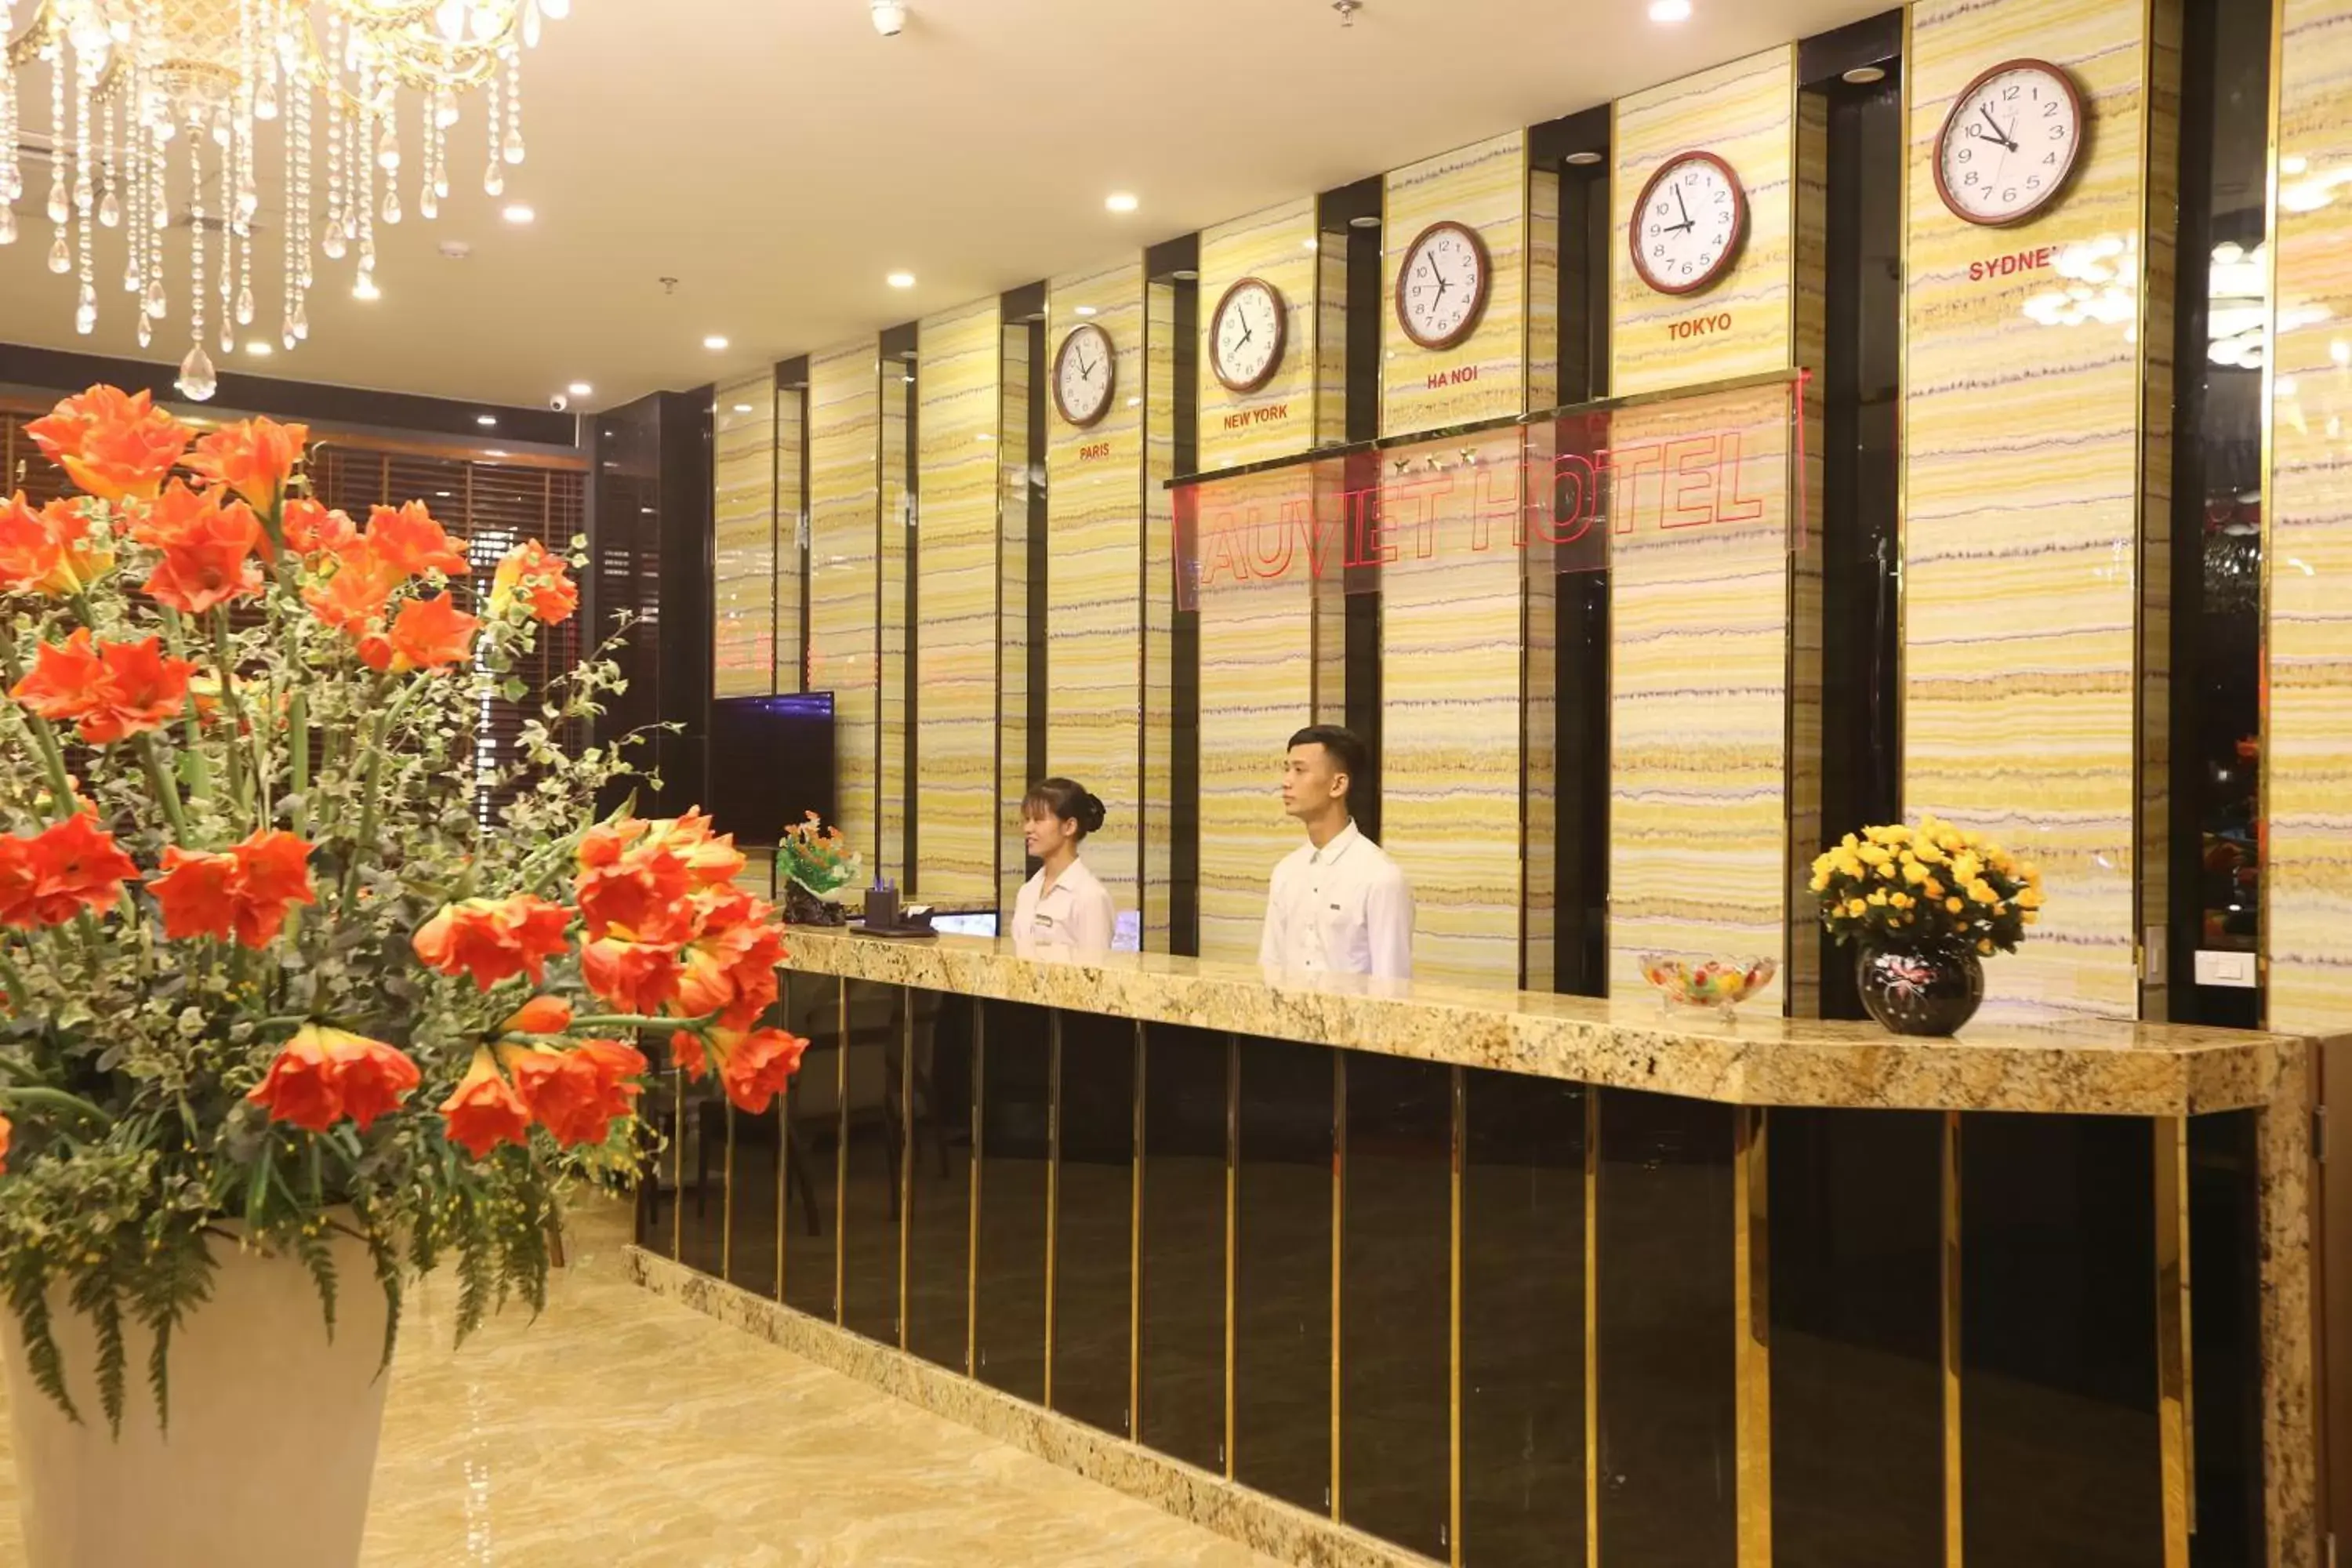 Lobby or reception, Lobby/Reception in Au Viet Hotel